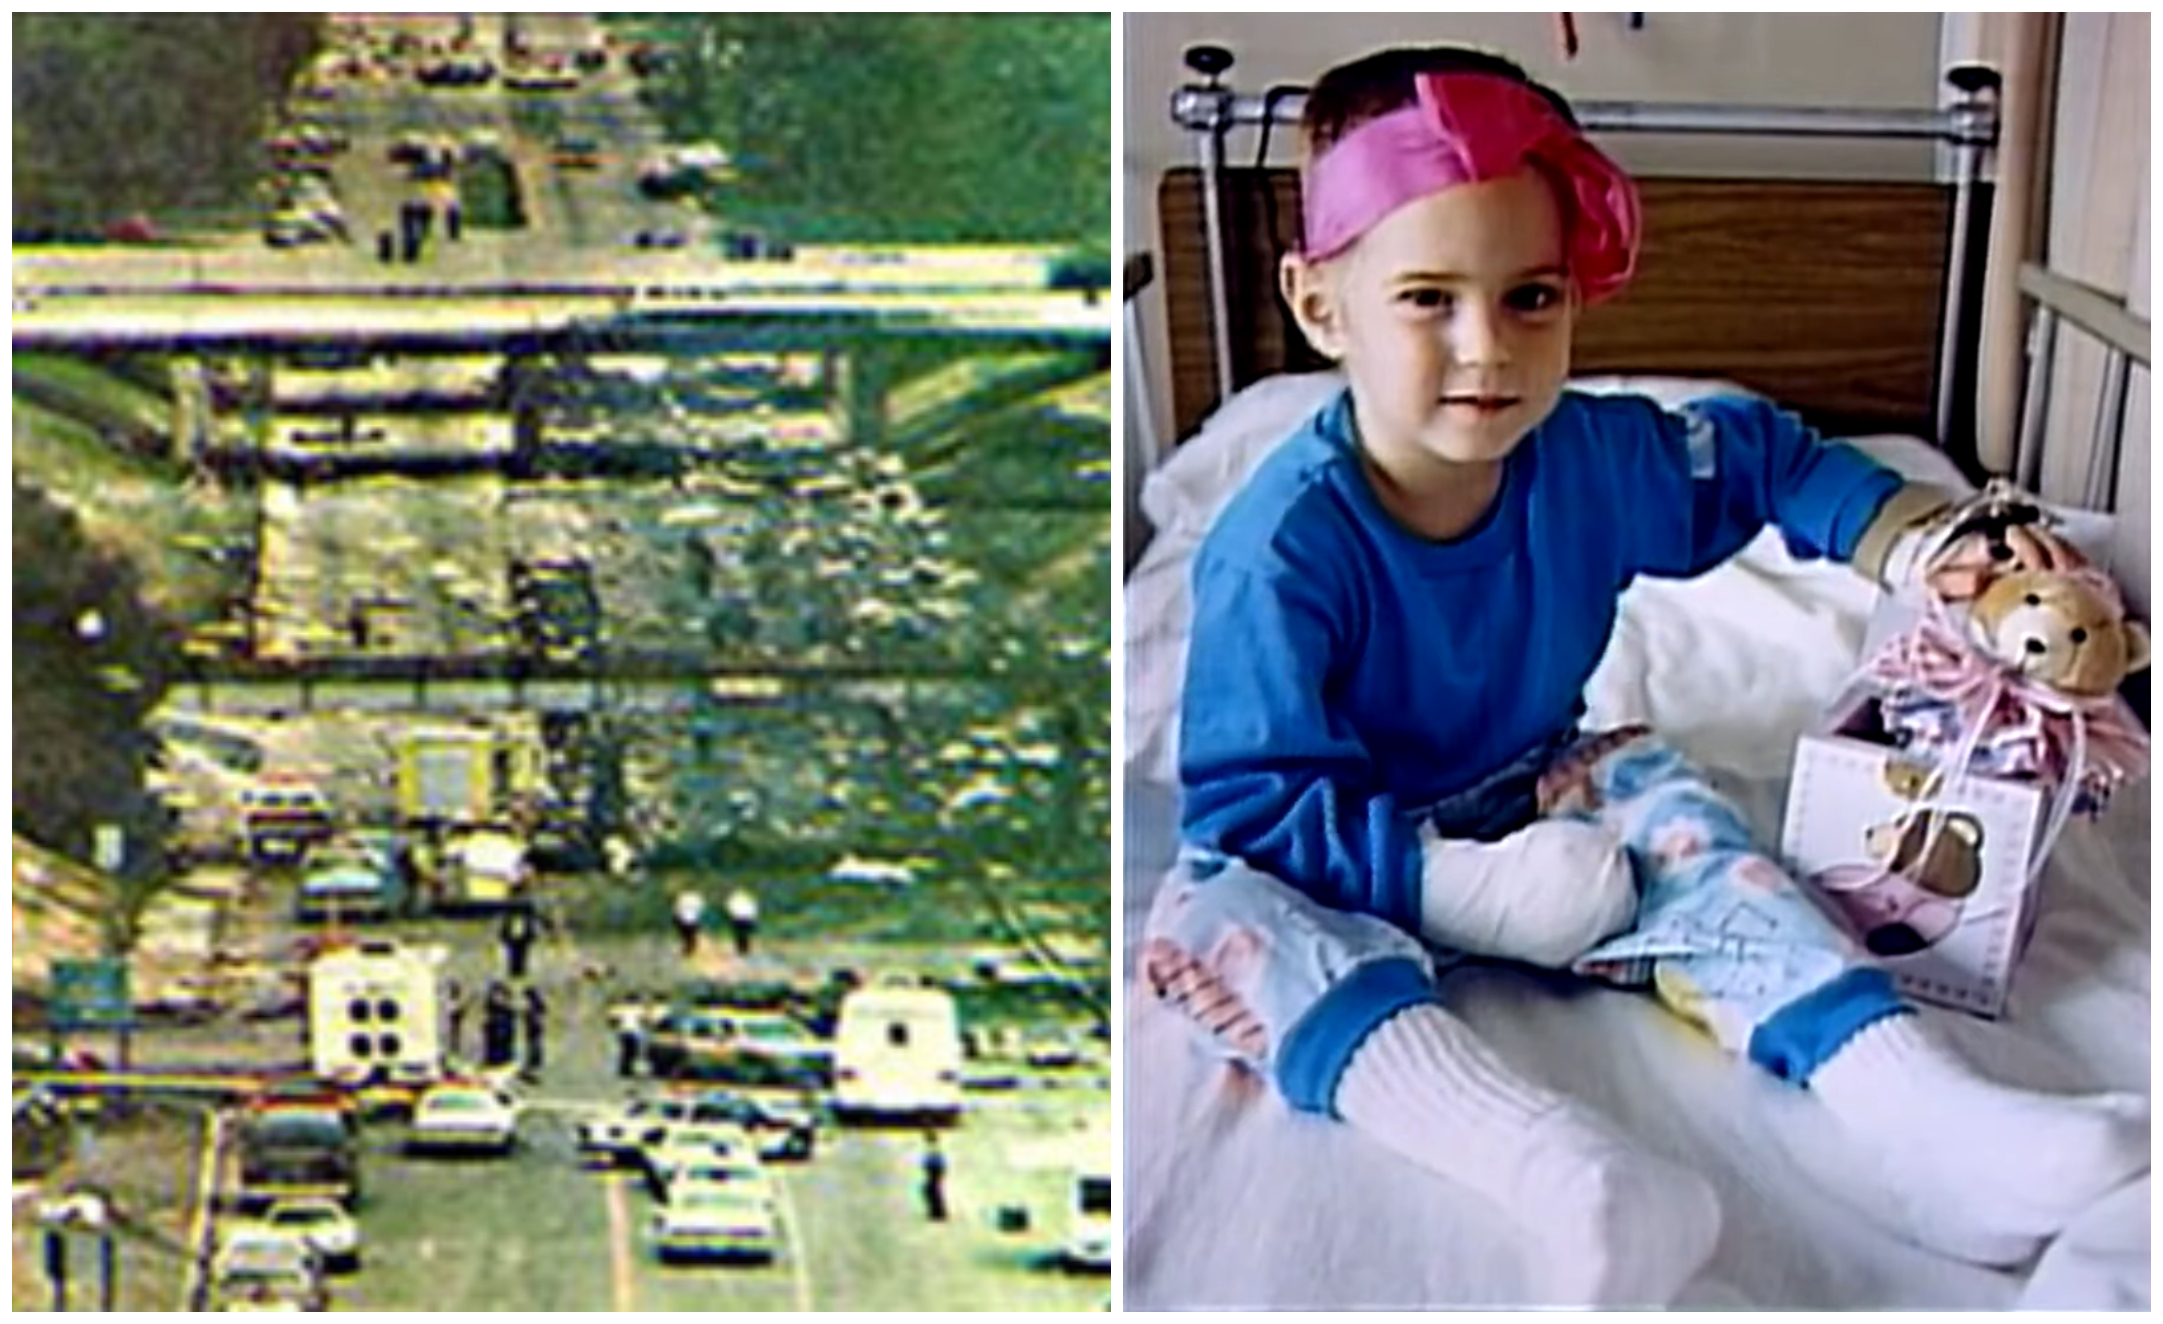 “Γιατί εγώ;”. Η 4χρονη που επέζησε από αεροπορικό δυστύχημα με 156 νεκρούς